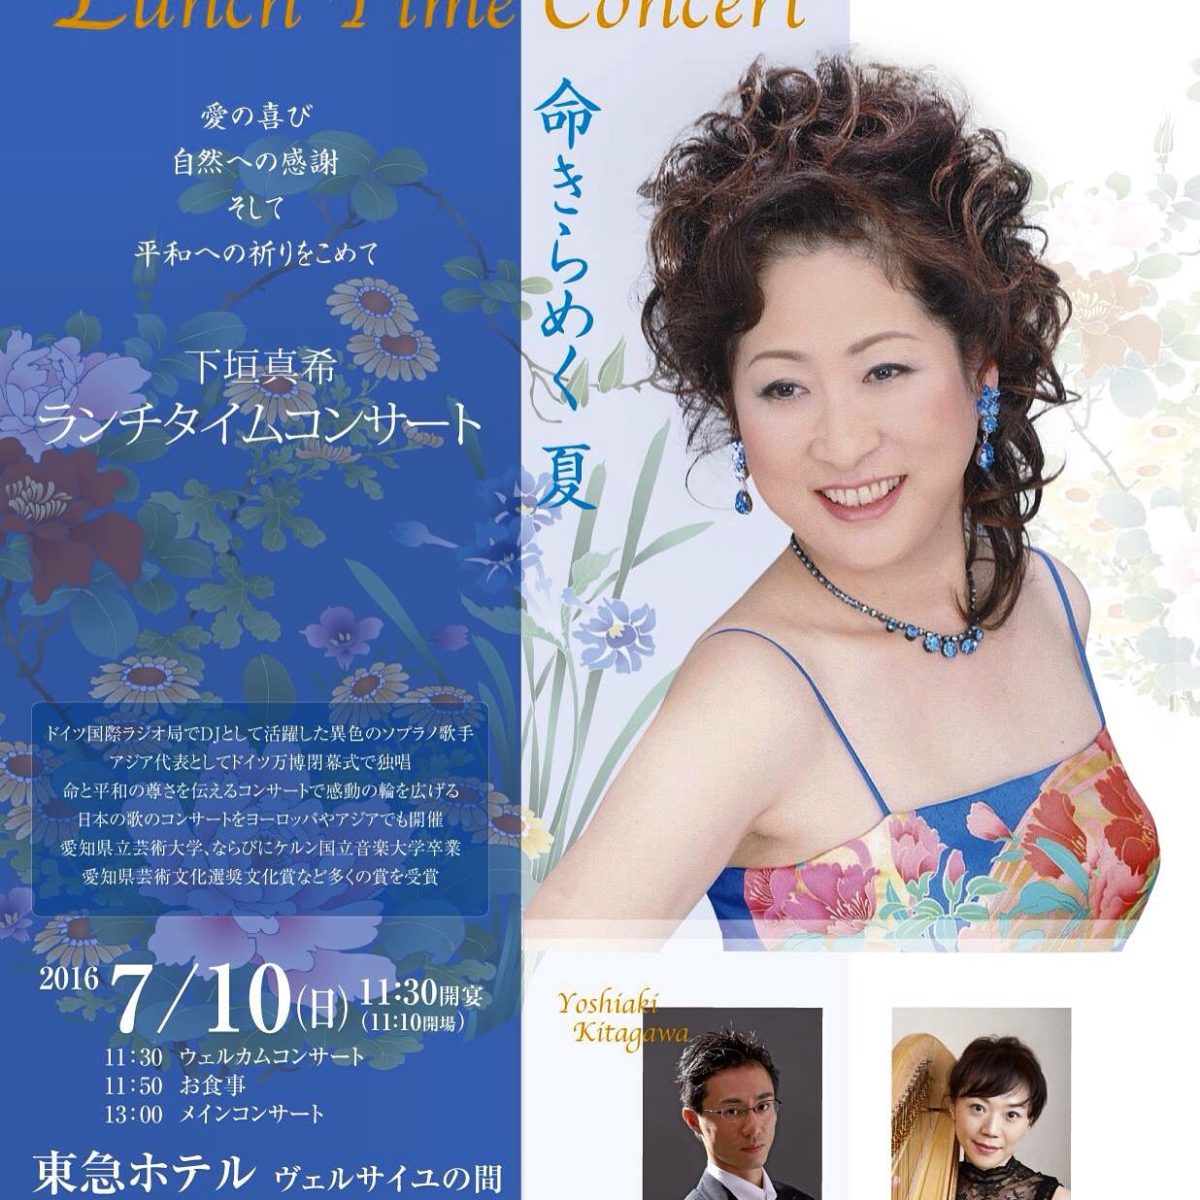 soprano maki shimogaki lunch concert 2016 07 10 69